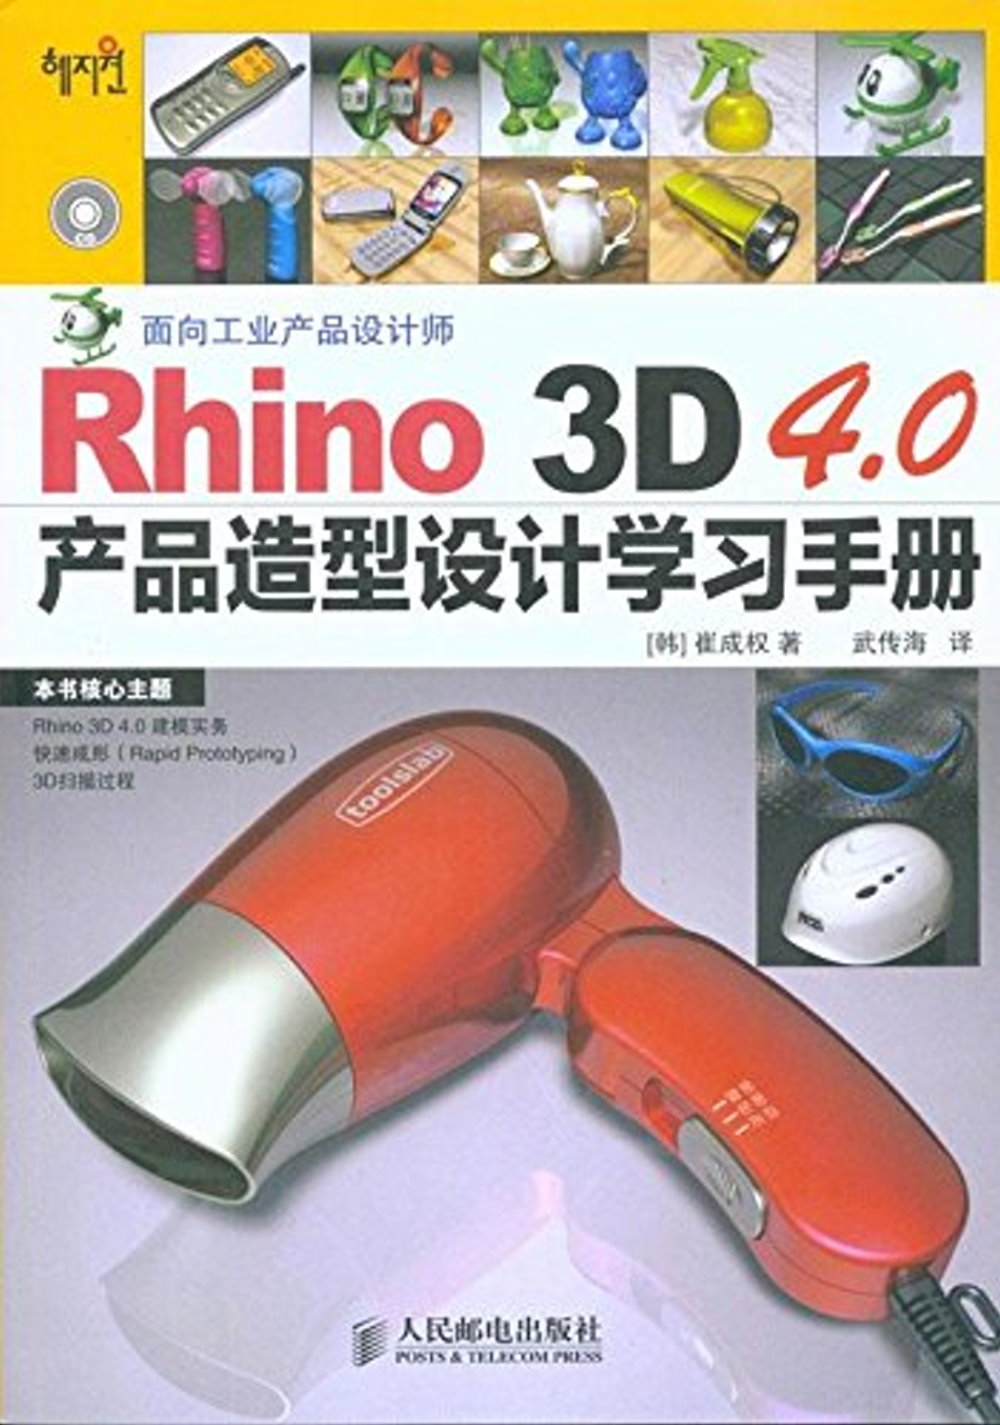 1CD--Rhino3D 4.0產品造型設計學習手冊